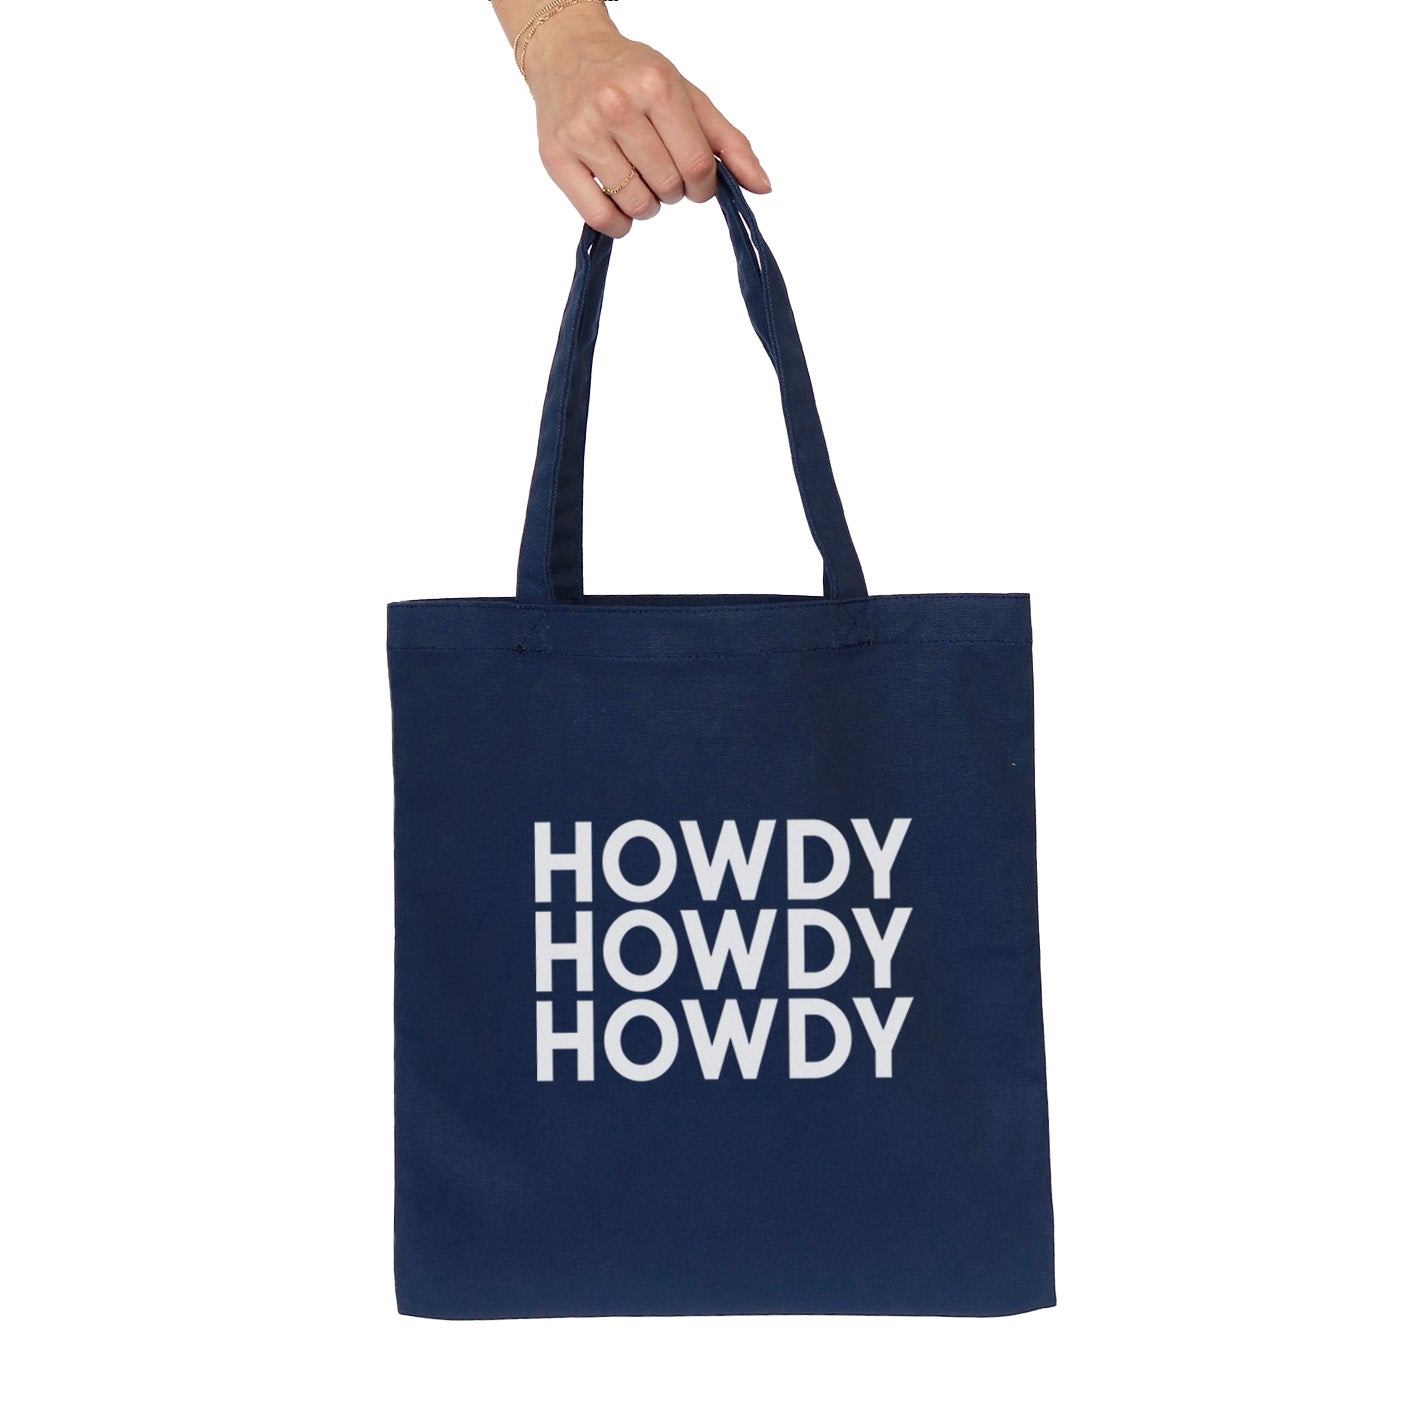 Howdy Howdy Howdy Tote Bag